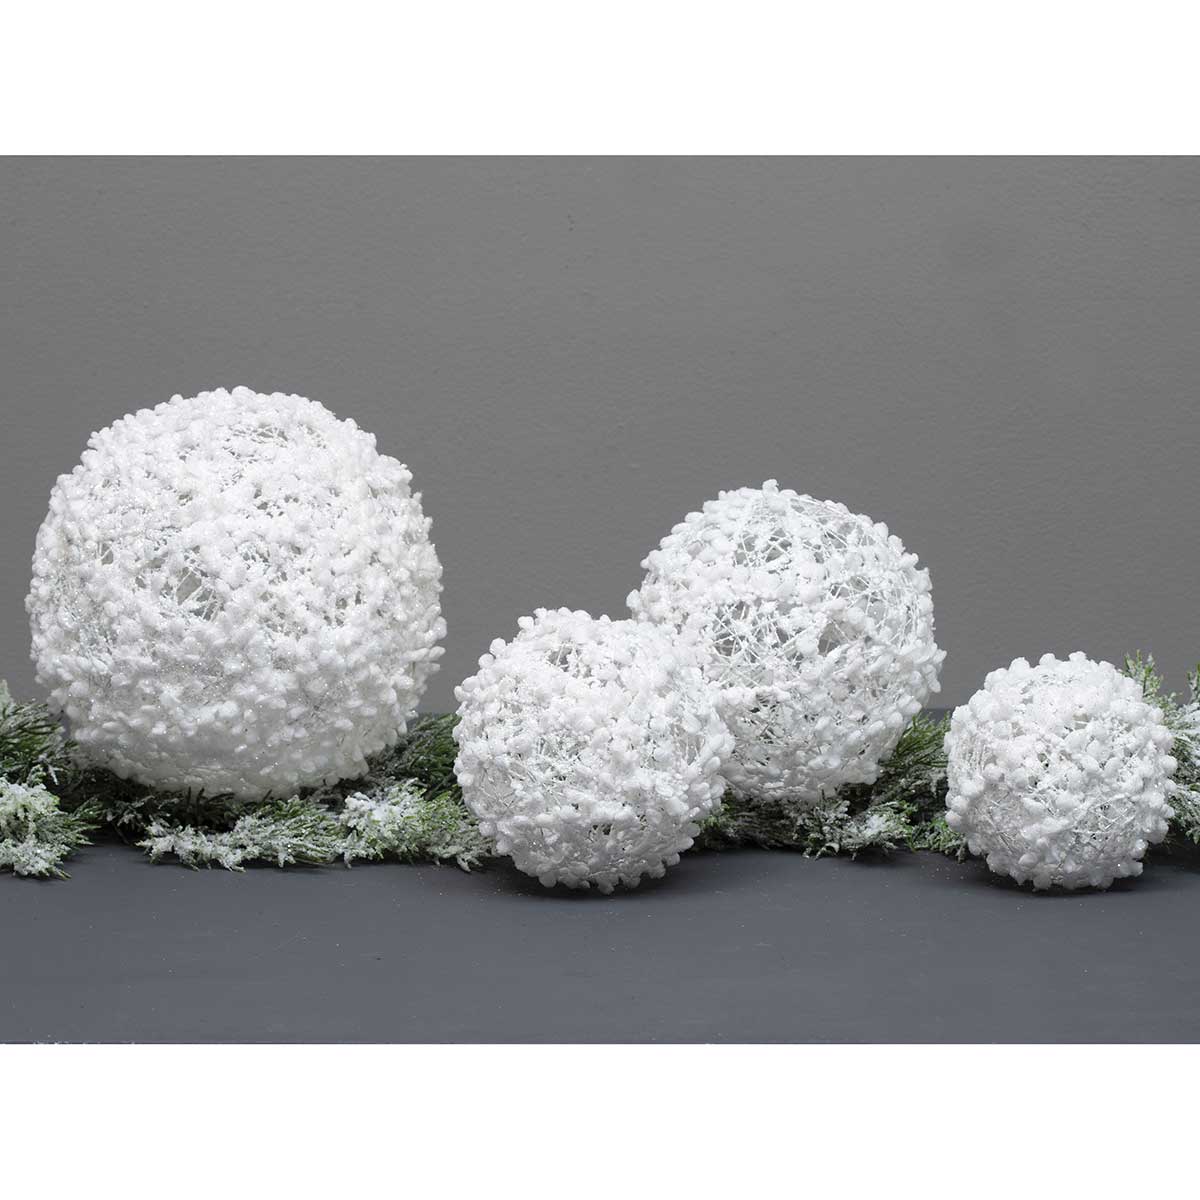 BALL PUFF BALL ORNAMENT SMALL 4IN WHITE GLITTER/MICA - Click Image to Close